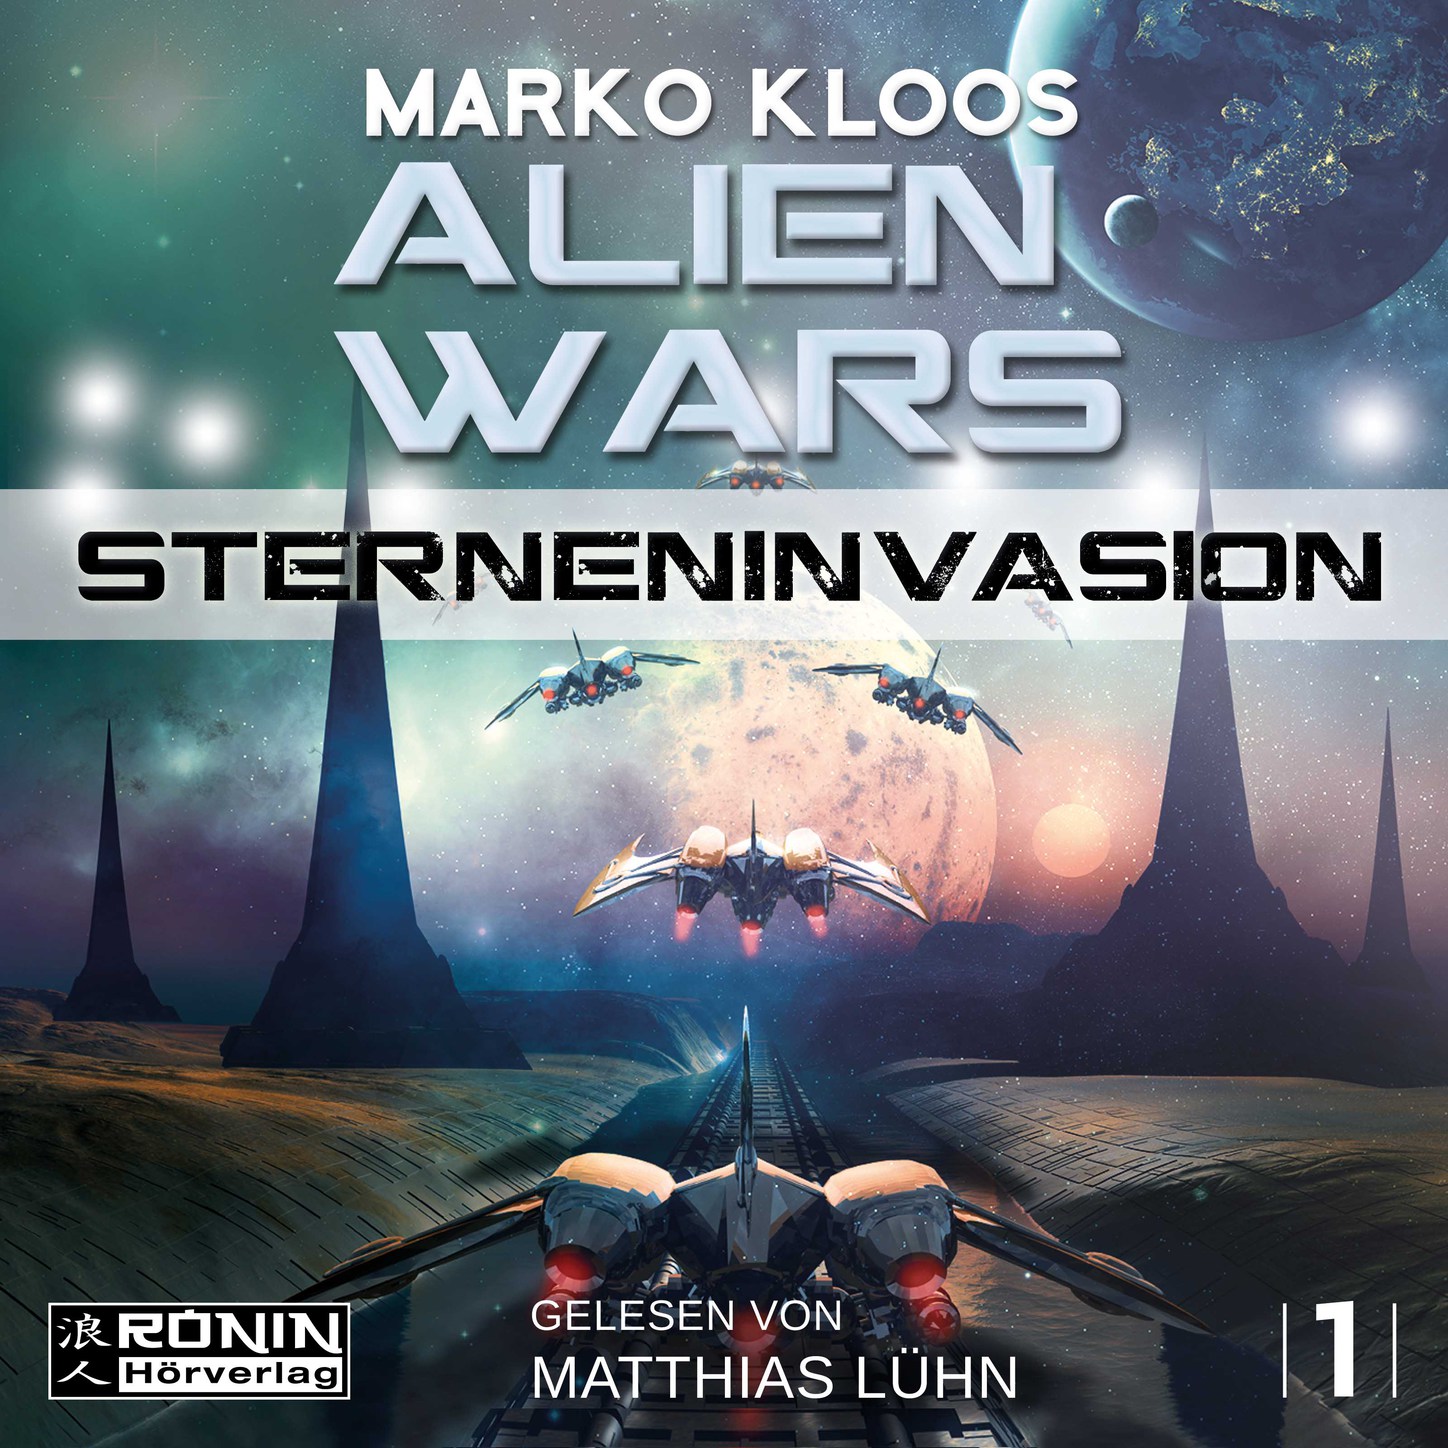 Скачать Sterneninvasion - Alien Wars 1 (Ungekürzt) - Marko Kloos